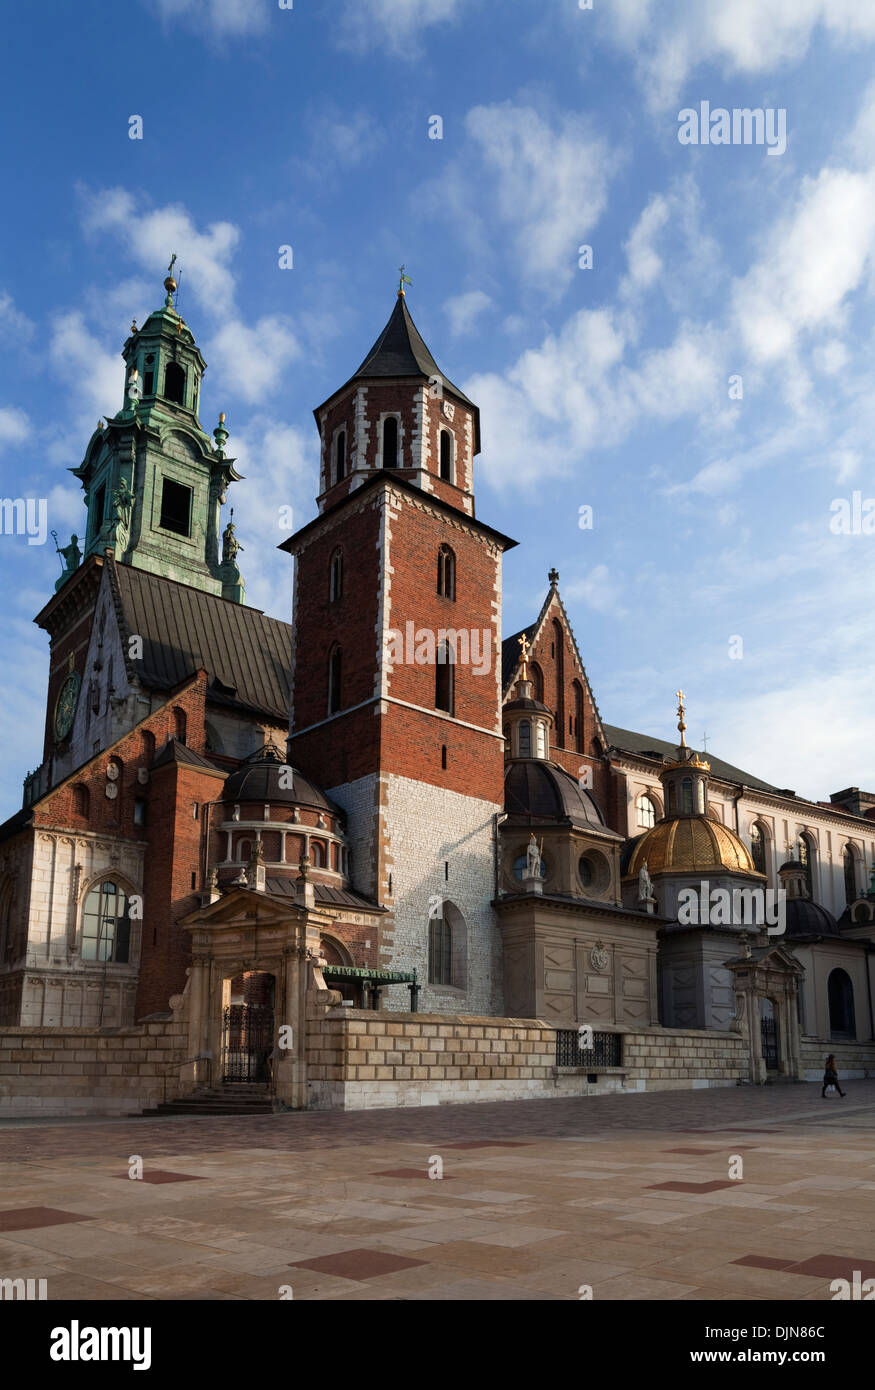 Der Turm der Wawel-Kathedrale und Kuppeln über die Sigismund-Kapelle, 11. Jahrhundert Königsschloss auf dem Wawel-Hügel, Krakau, Polen Stockfoto